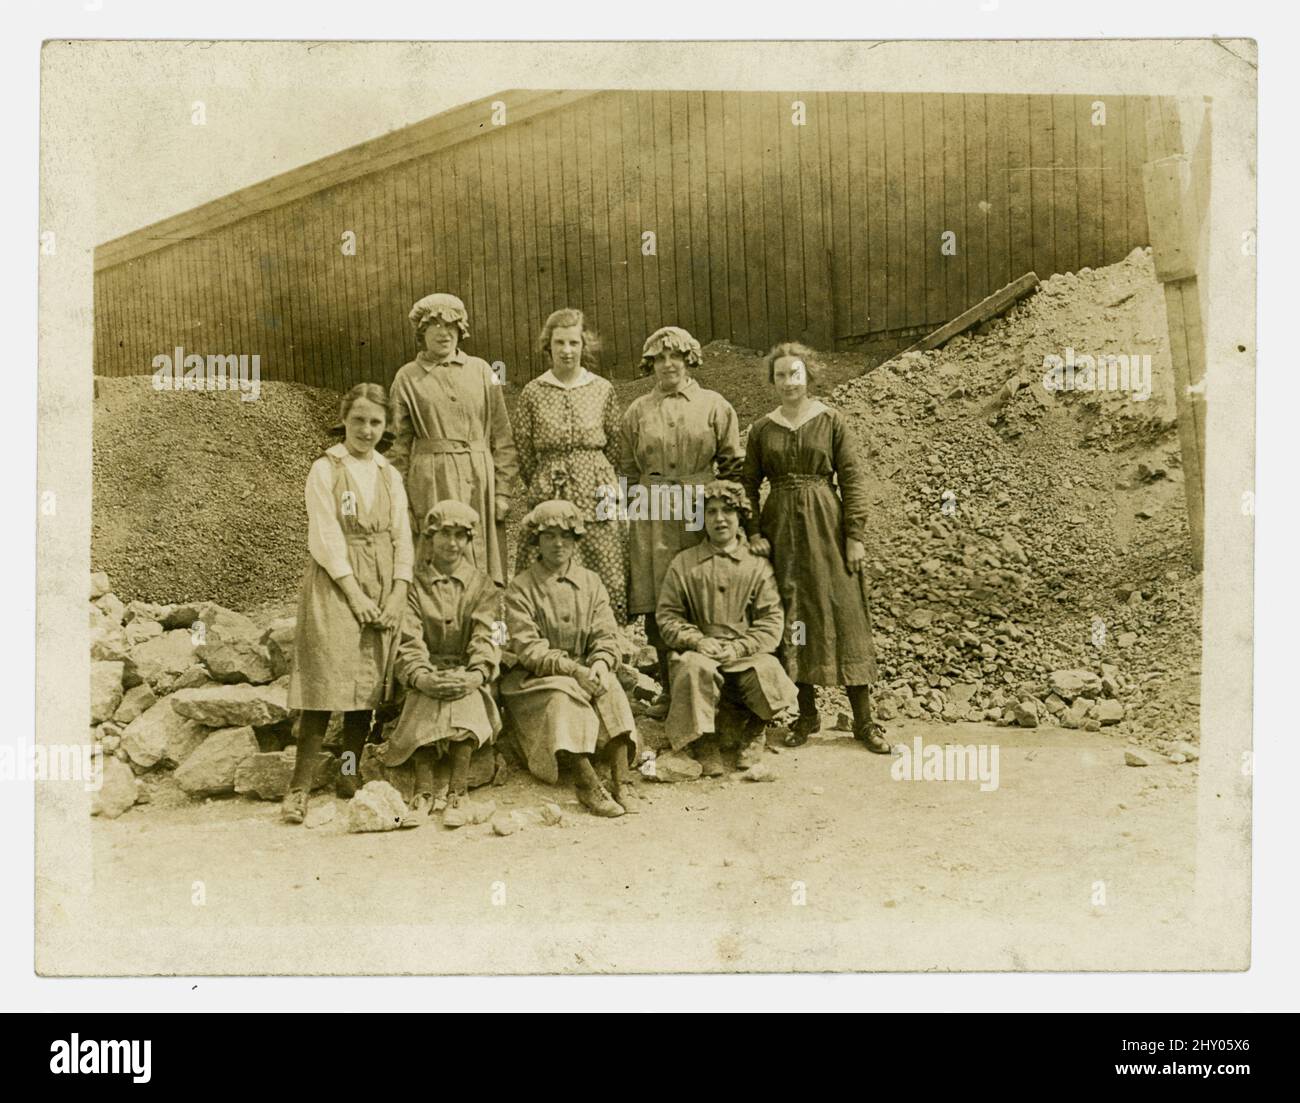 Originalfoto aus der Zeit von WW1 von einer Gruppe weiblicher Steinbrucharbeiterinnen, die die Arbeit von Männern verrichten, die im Krieg gekämpft haben. Die Mädchen tragen Uniform und sitzen zwischen Steinbrüchen. Runcorn, Khishire, Großbritannien, um 1916. Stockfoto